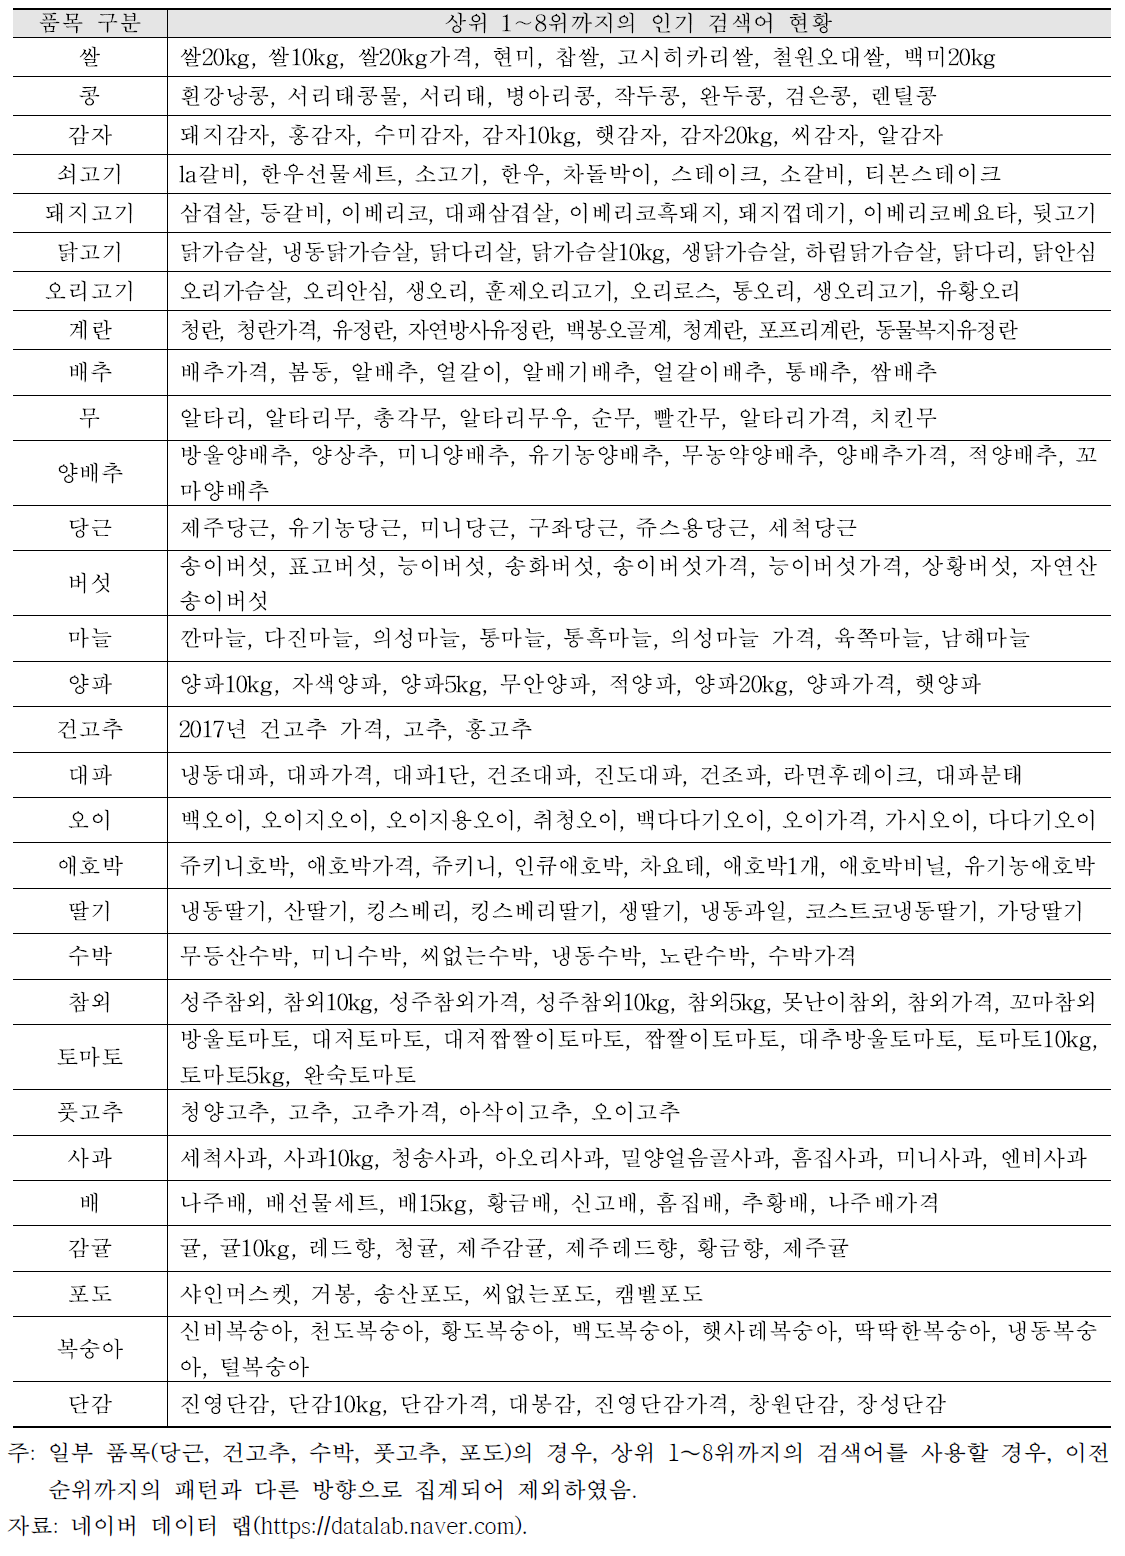 품목별 인기 검색어 현황(2017.8.1.∼2017.12.31)